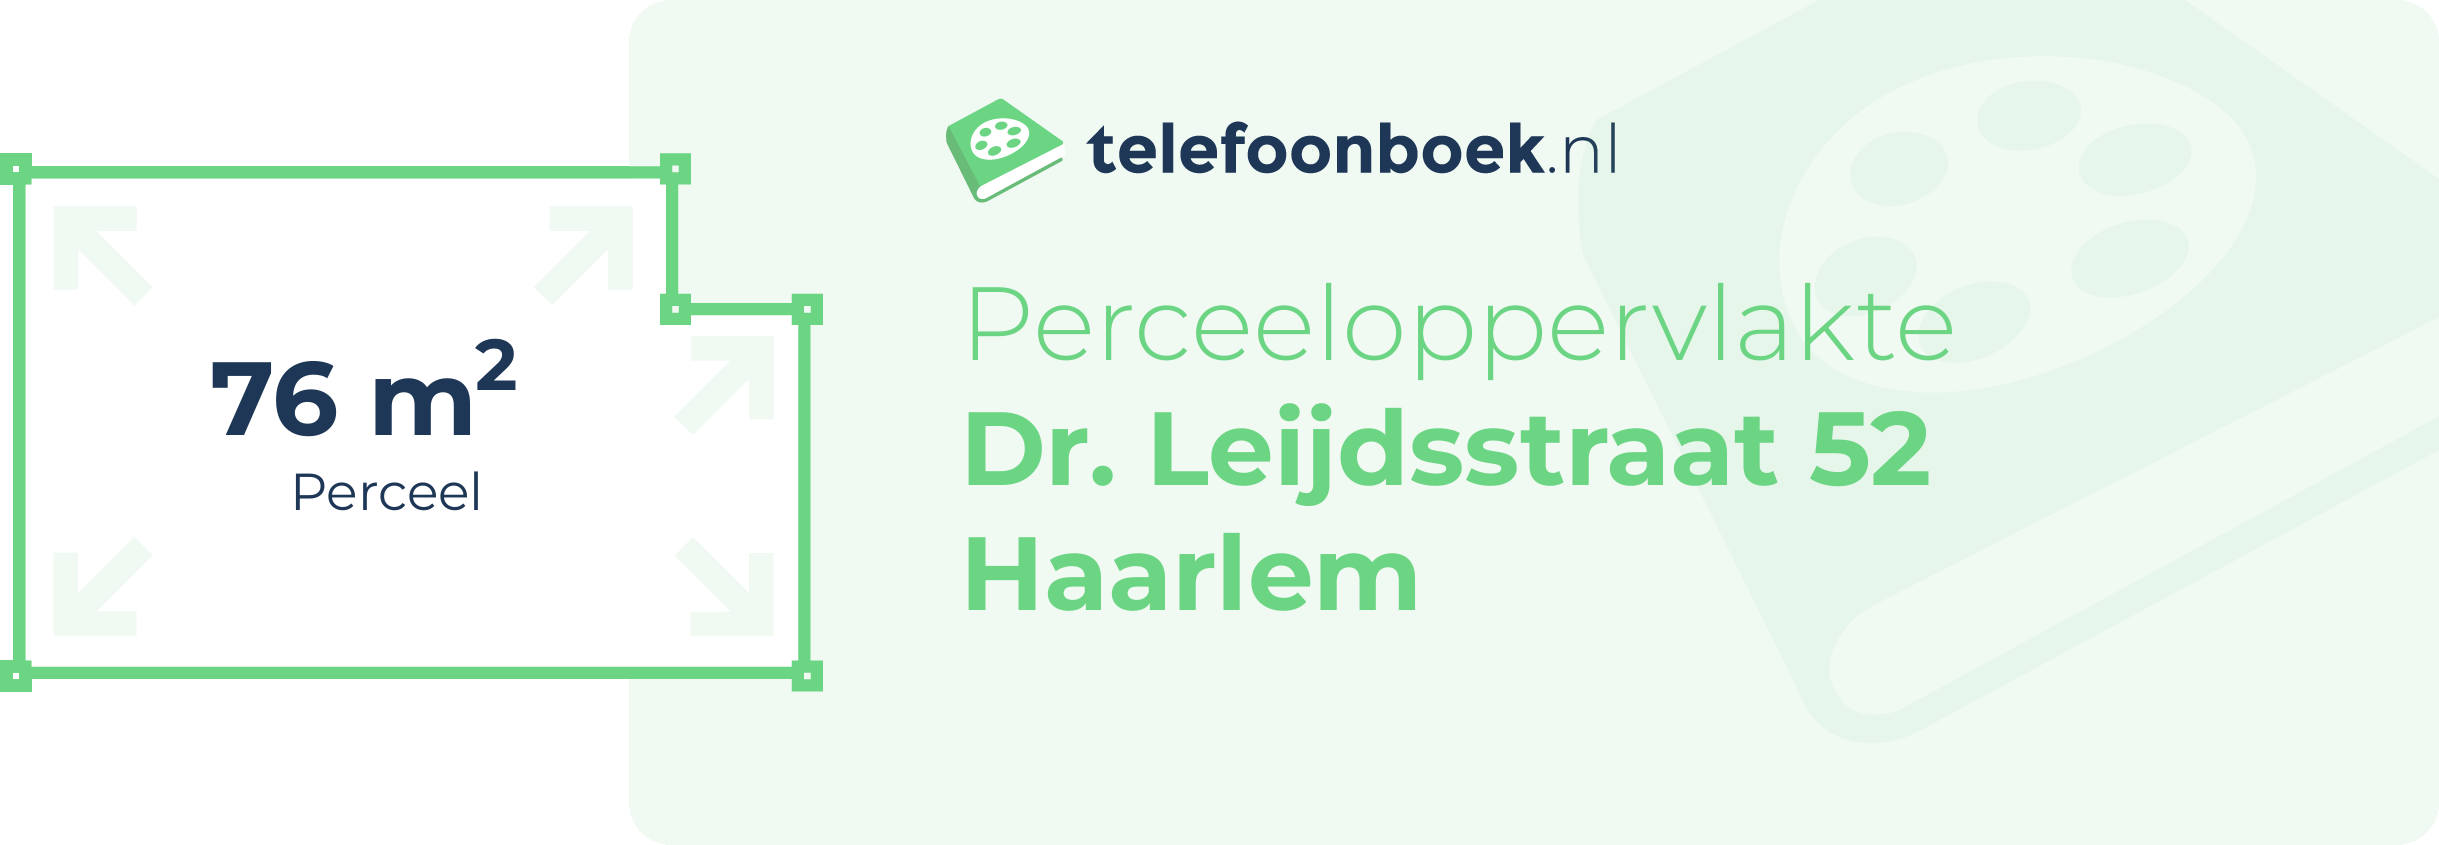 Perceeloppervlakte Dr. Leijdsstraat 52 Haarlem